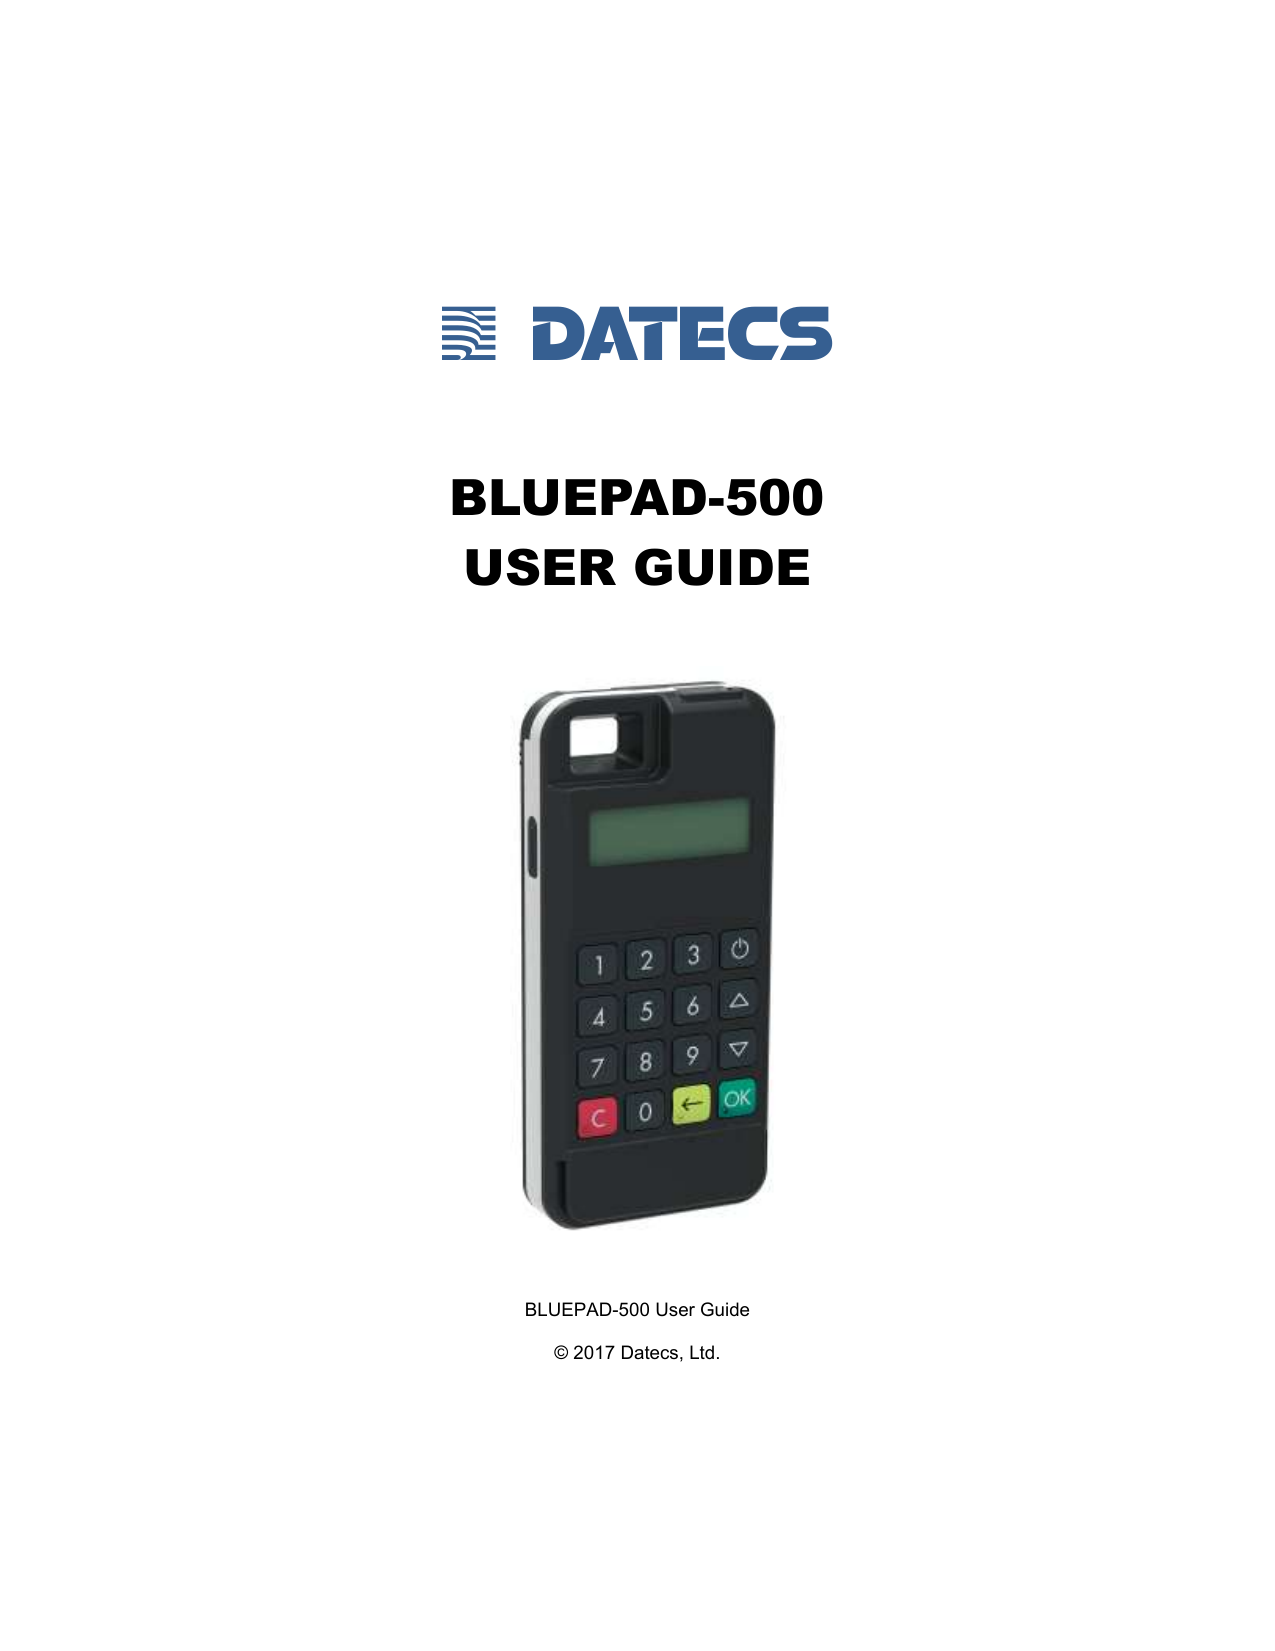 DATECS SUMUP AIR V3 Handheld Payment Terminal User Guide